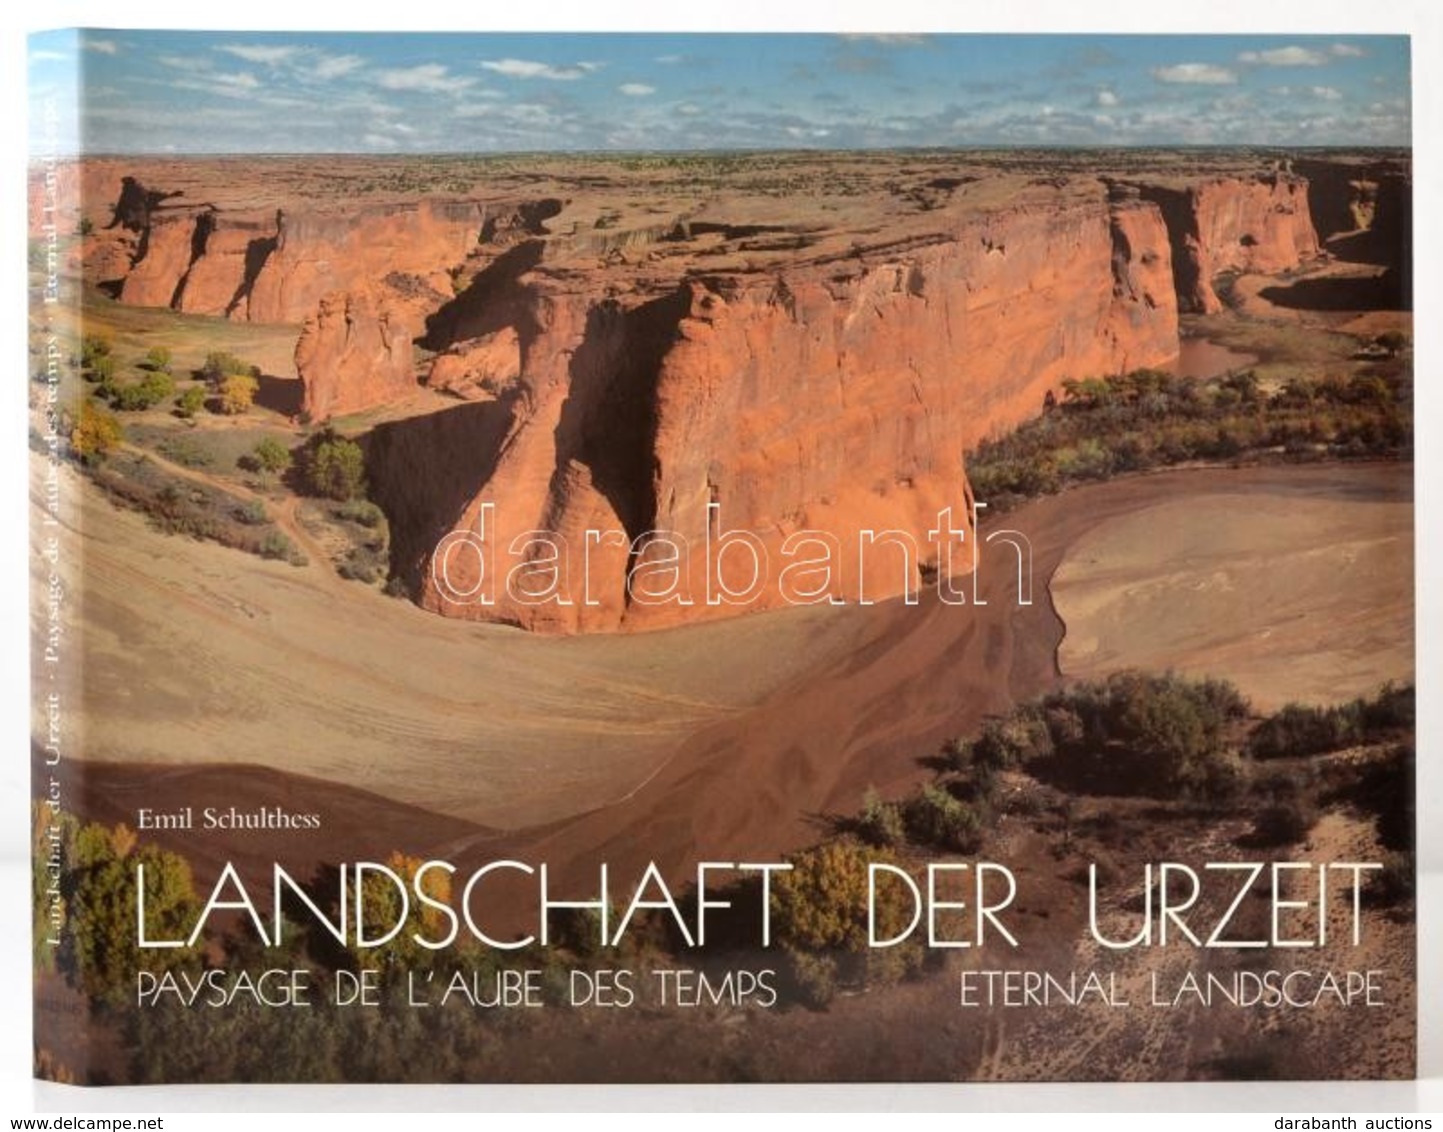 Emil Schulthess-Sigmund Widmer: Landschaft Der Urzeit. Paysage De L'Aube Des Temps. Eternal Landscape. Zürich, 1989, Art - Sin Clasificación